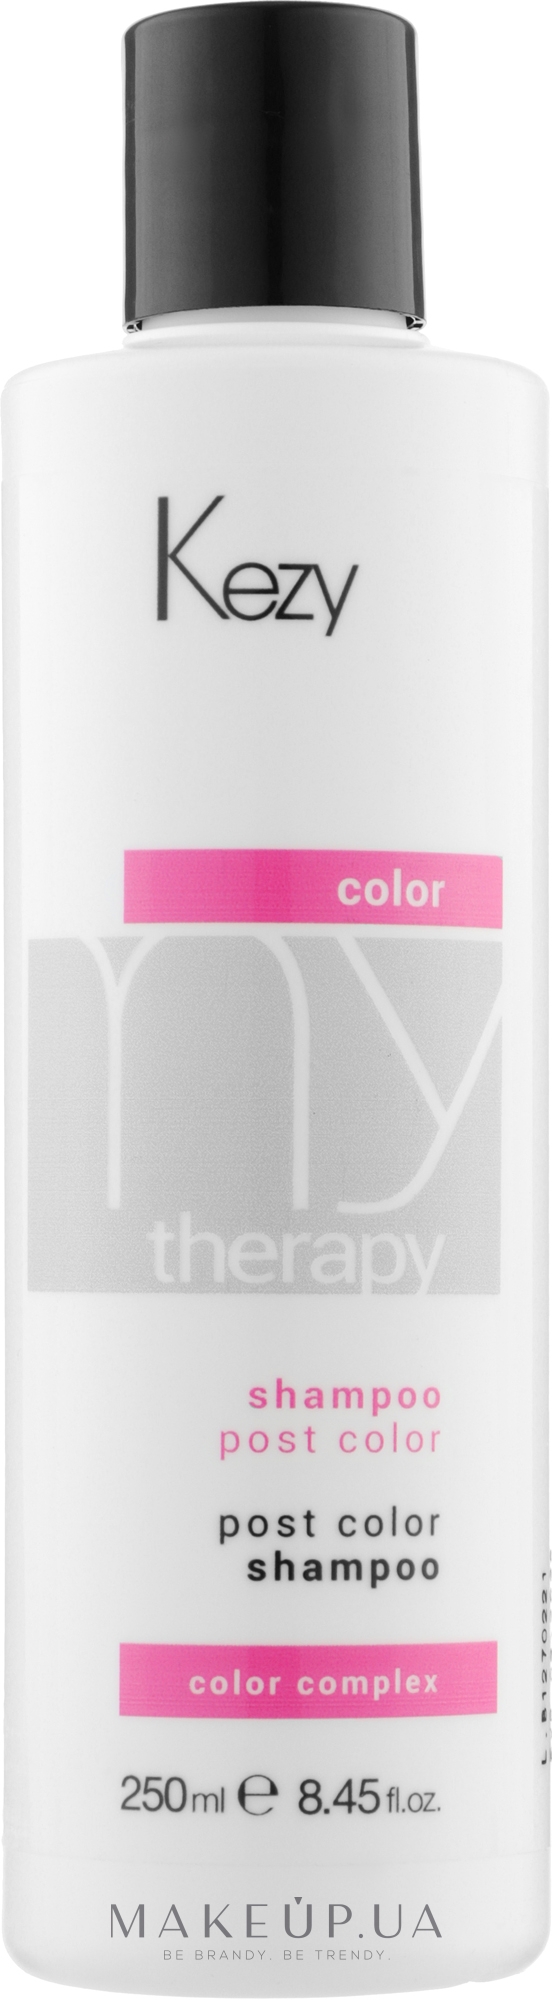 Шампунь для фарбованого волосся з екстрактом граната - Kezy My Therapy Post Color Shampoo — фото 250ml